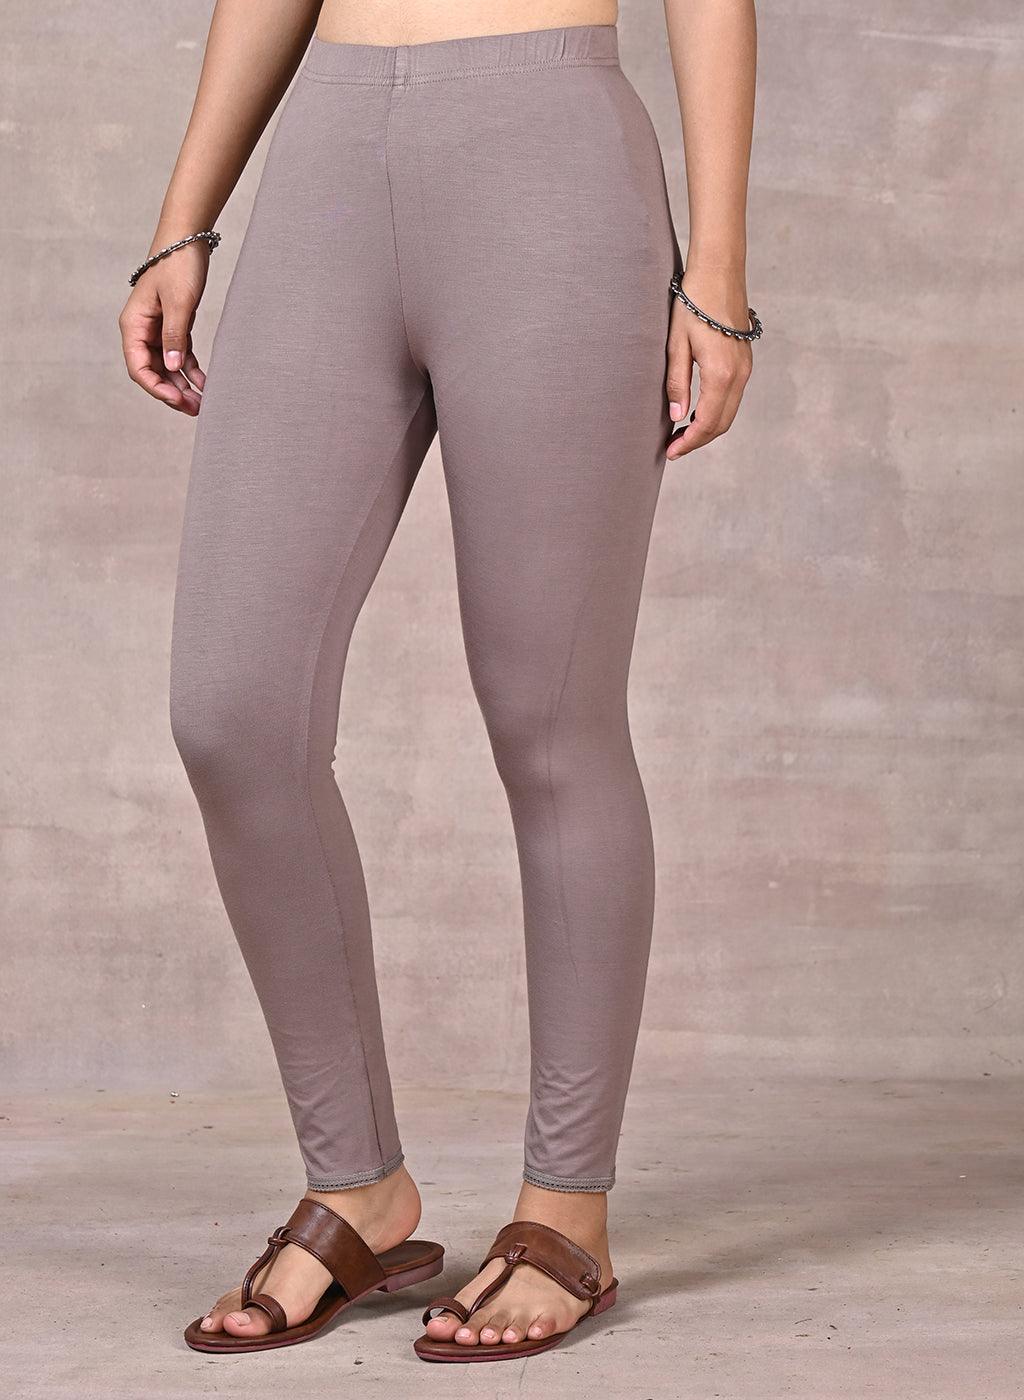 Ladies Stretch Skinny Jeggings Jeans Denim Leggings Sizes 6 - 20 UK Seller  Stock | eBay